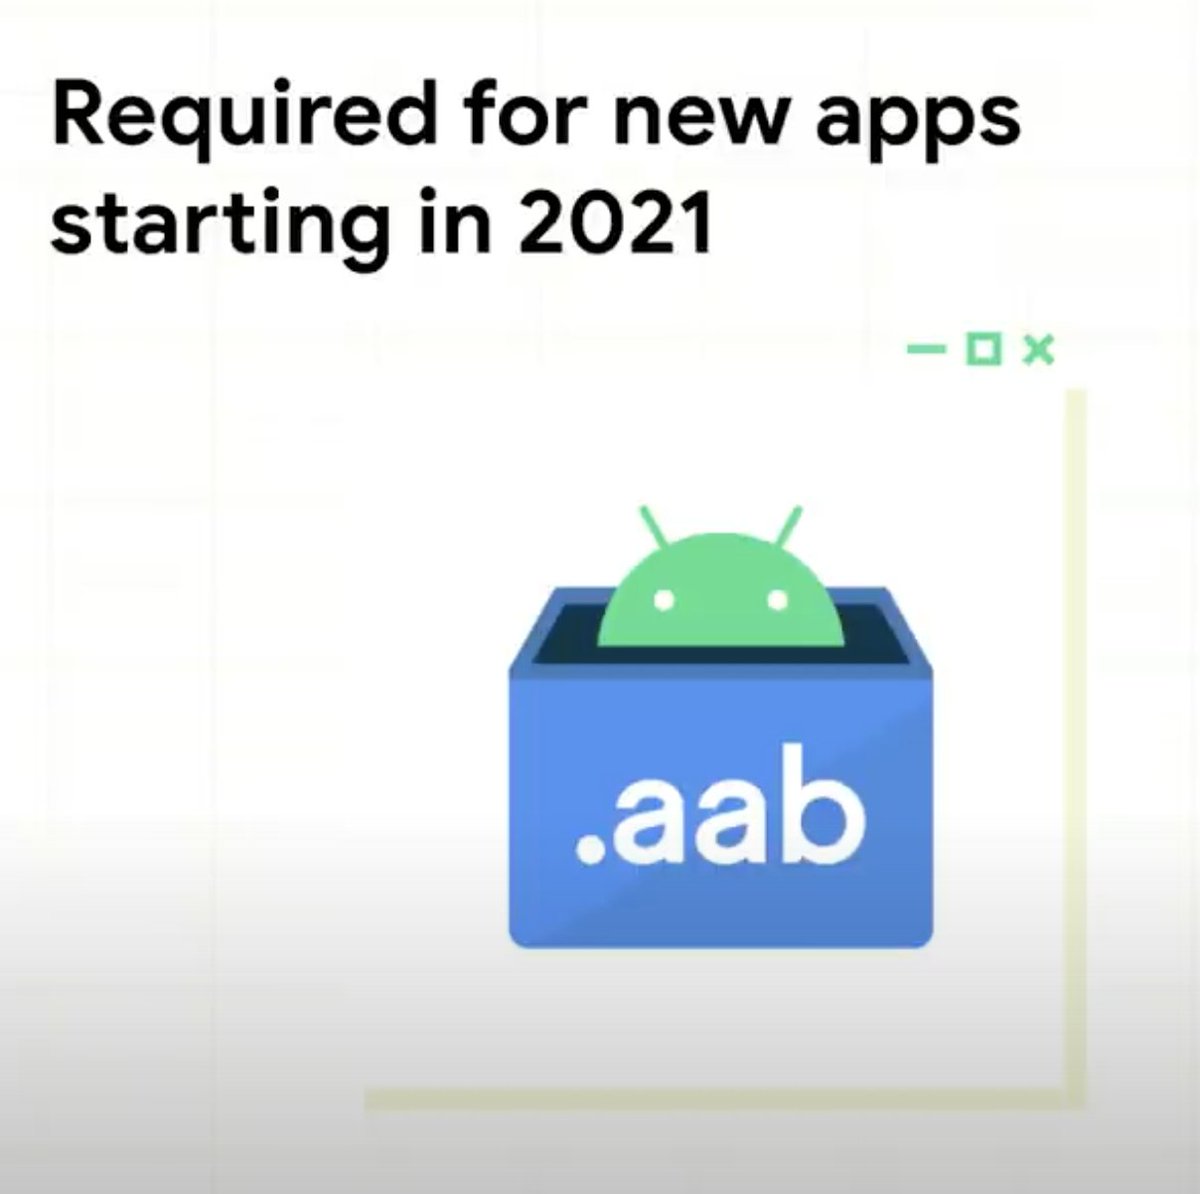 2021年に新規アプリでAppBundleの必須化みたいな話が出てる(動画ではexpectて言ってた)
youtu.be/cMr-b660Esw?t=…